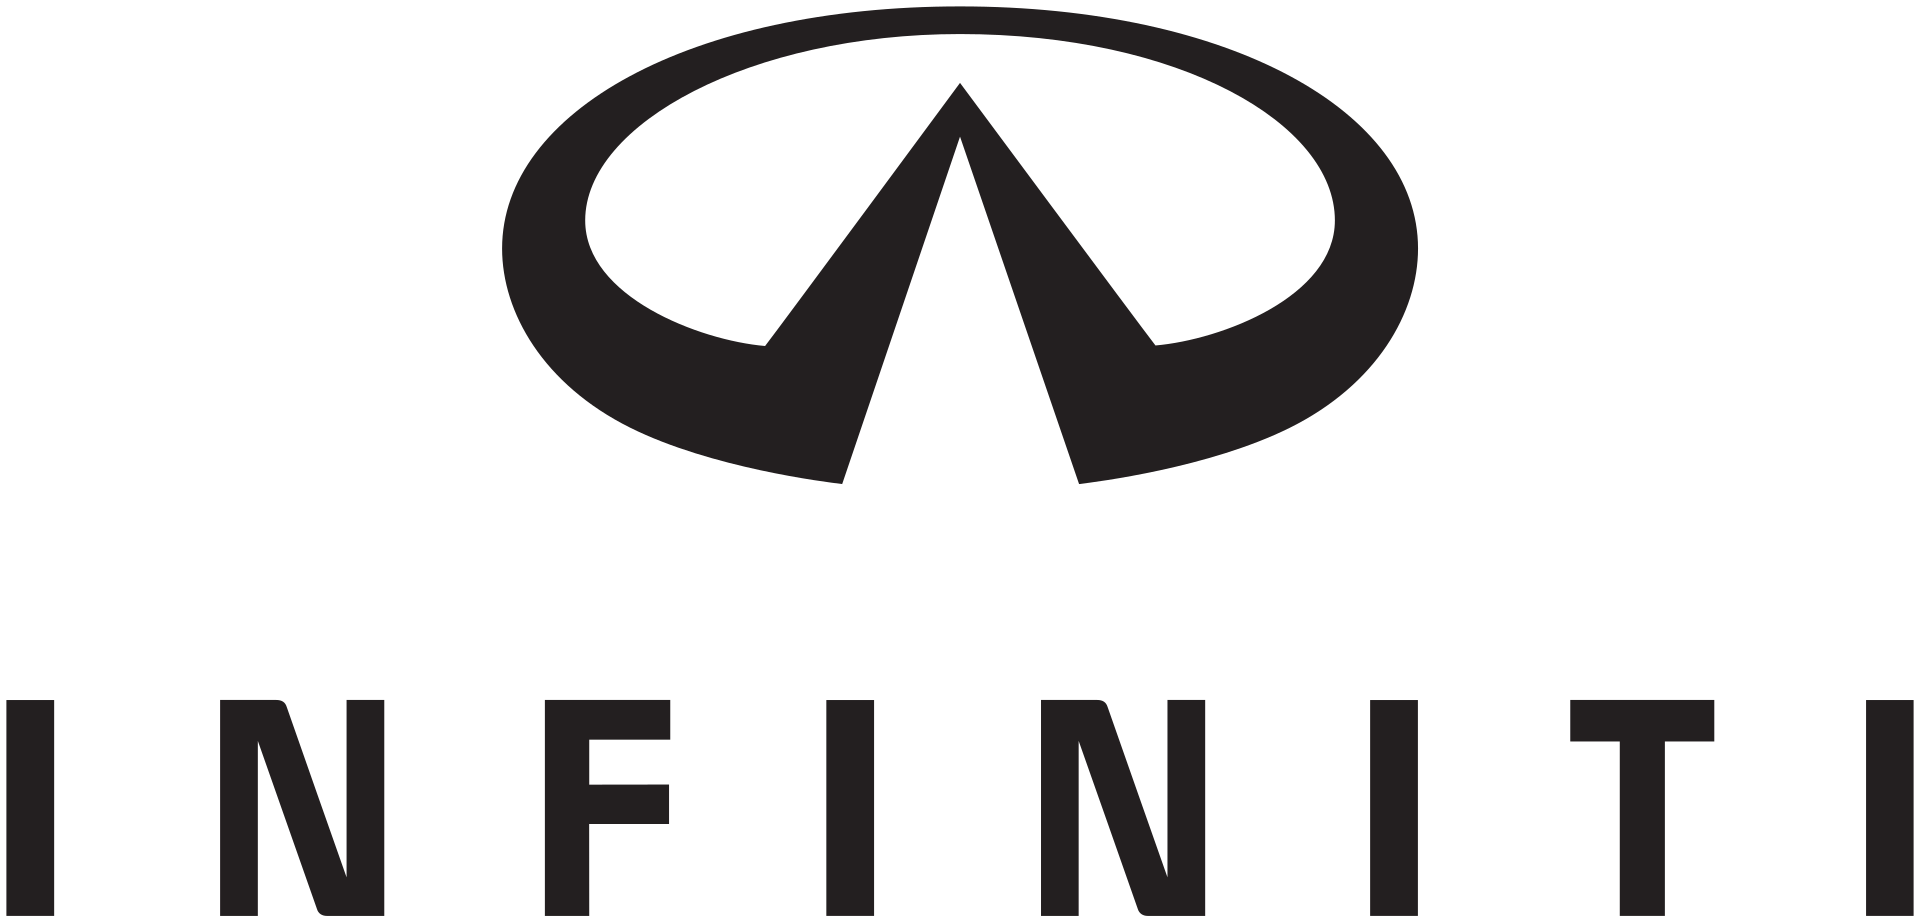 History Of The Infiniti Car Emblem